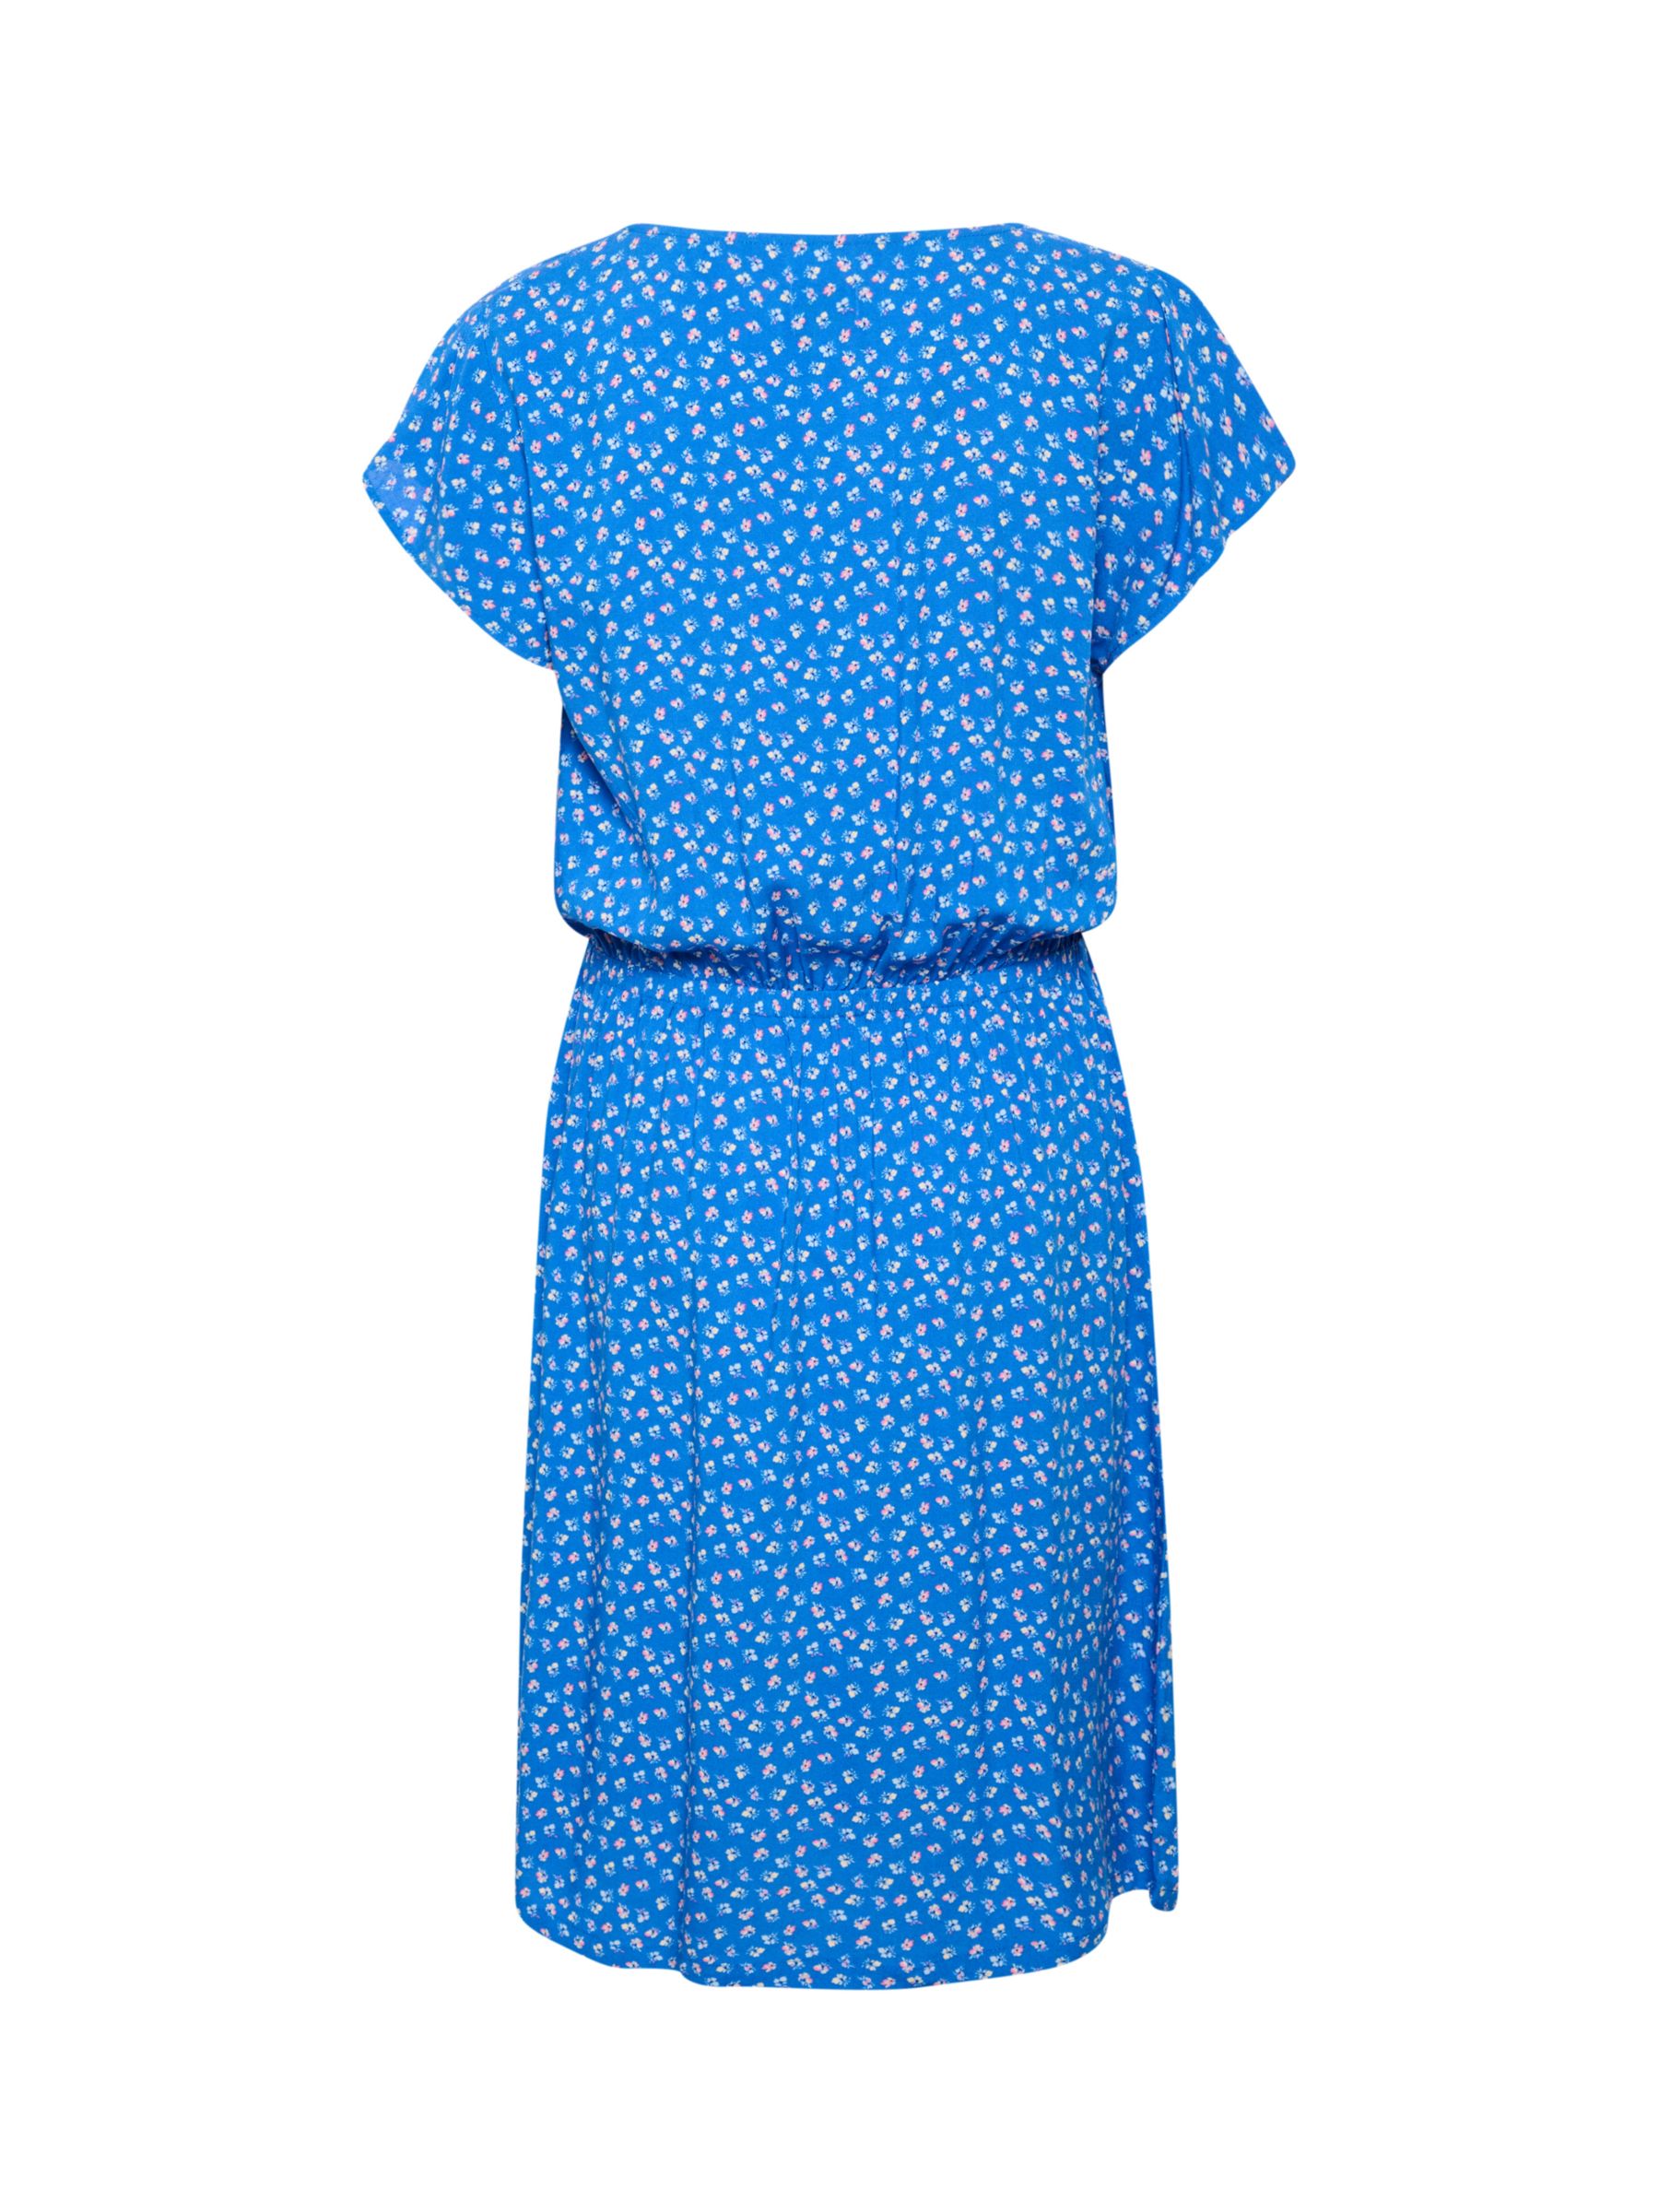 Saint Tropez Edua Ditsy Floral Print Knee Length Dress, Blue/Multi, XS